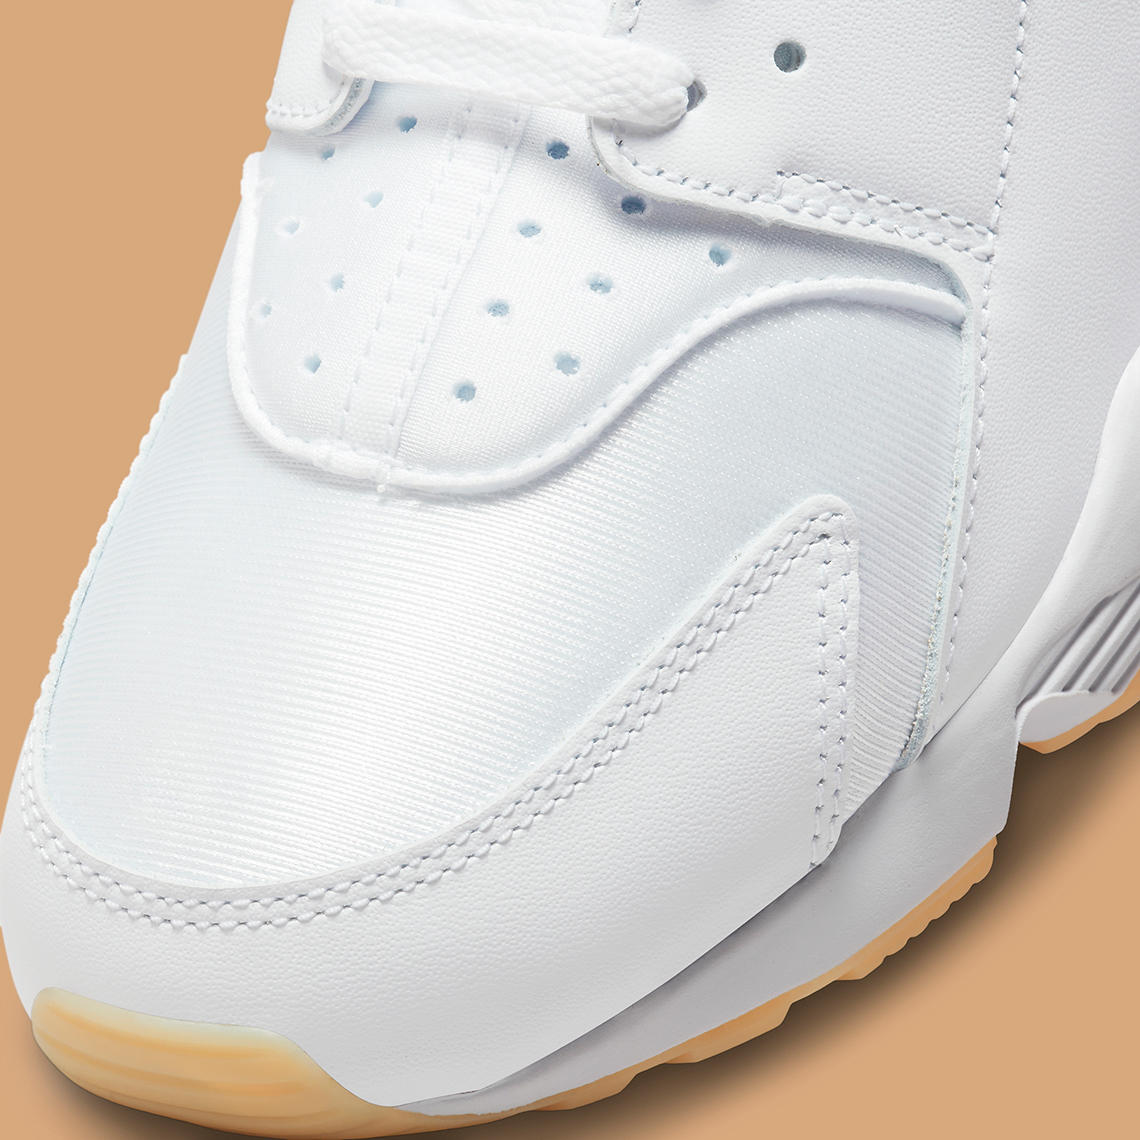 Nike Air Huarache White Gum Dr9883 100 Release Date 1